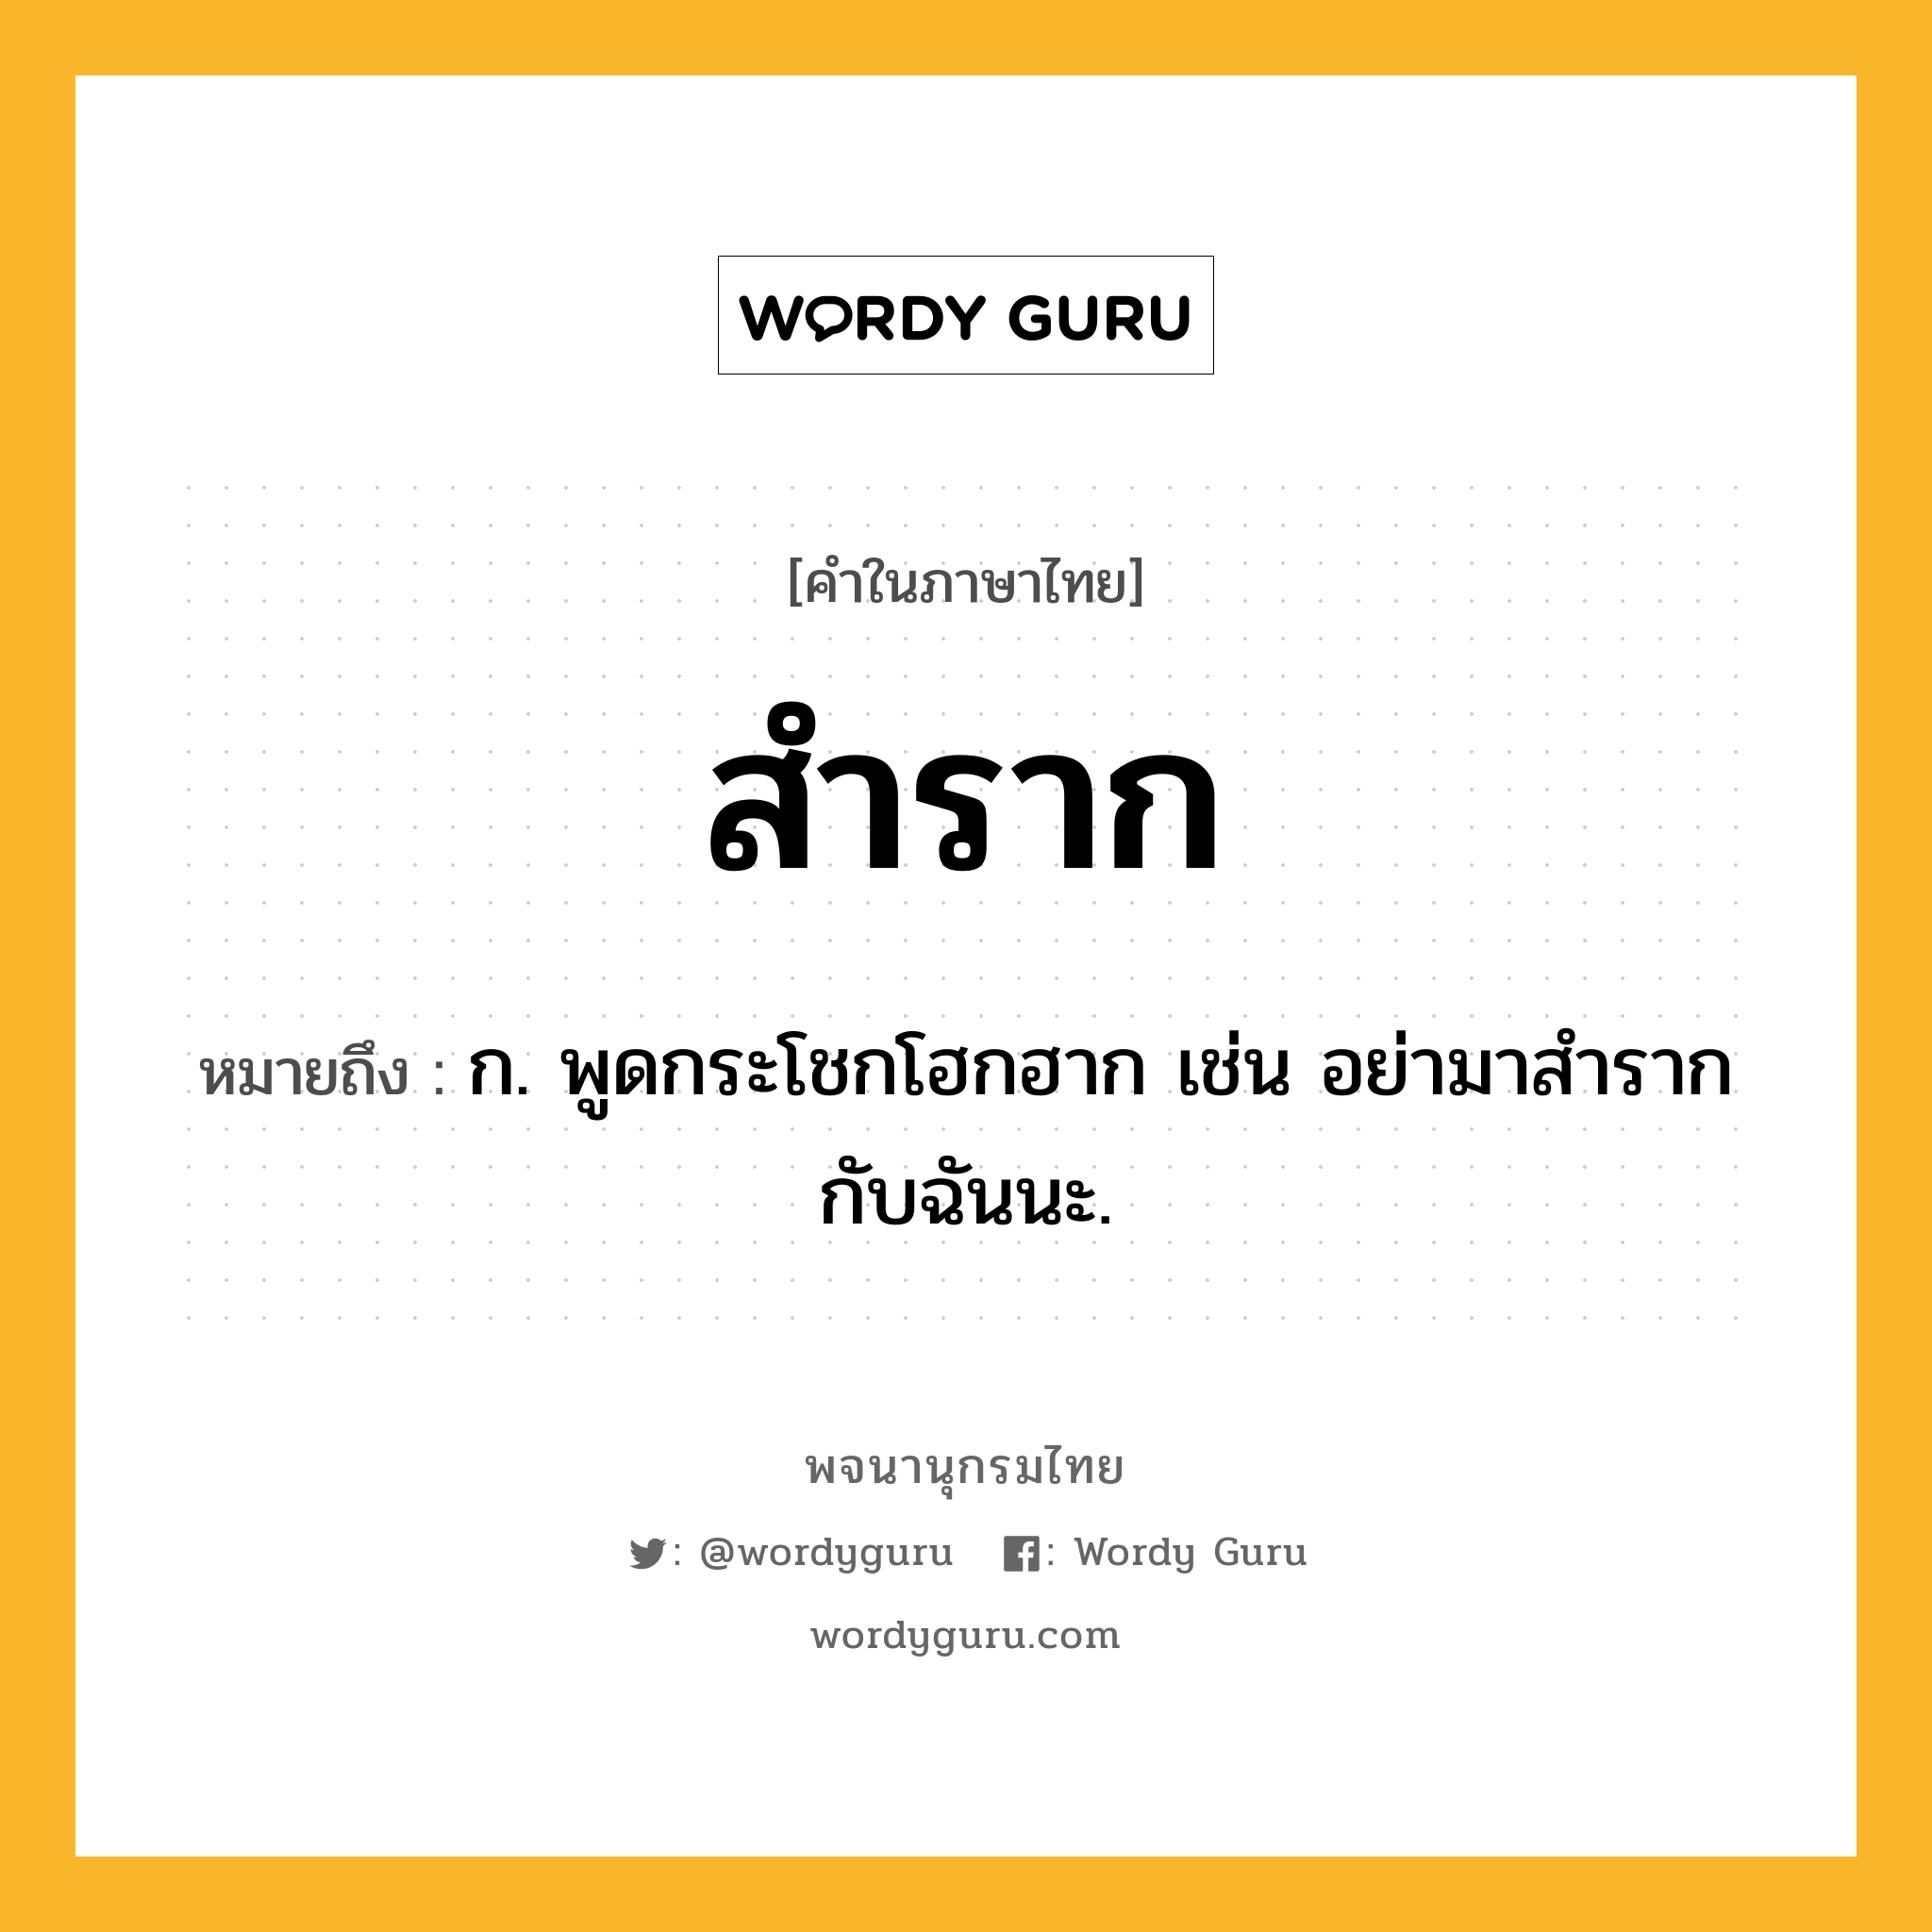 สำราก ความหมาย หมายถึงอะไร?, คำในภาษาไทย สำราก หมายถึง ก. พูดกระโชกโฮกฮาก เช่น อย่ามาสำรากกับฉันนะ.